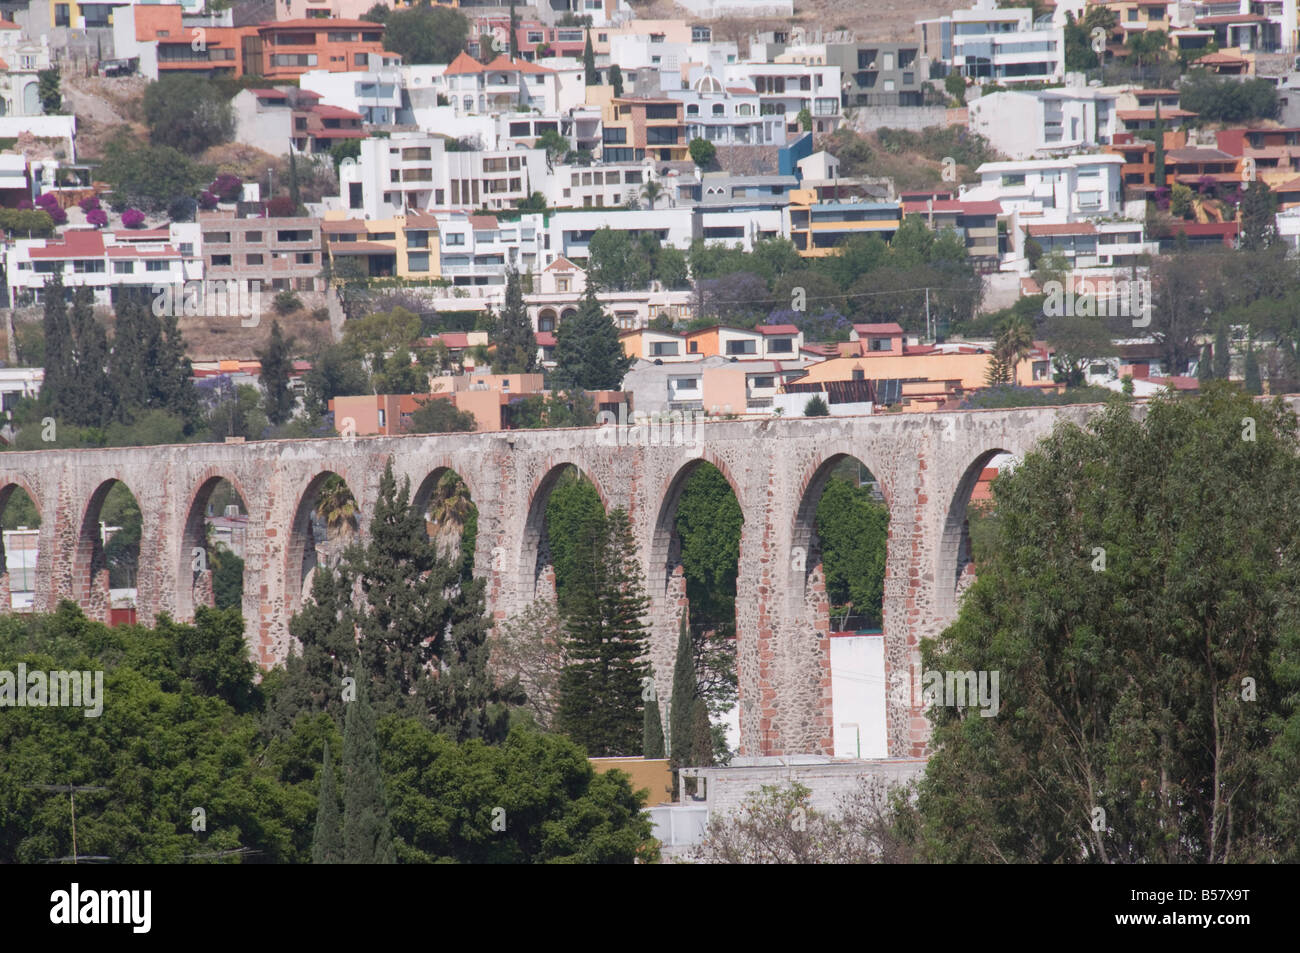 Acueducto construido en el 1720s y 1730s para traer agua desde los manantiales cercanos a Santiago de Querétaro, Querétaro, Estado de Querétaro Foto de stock